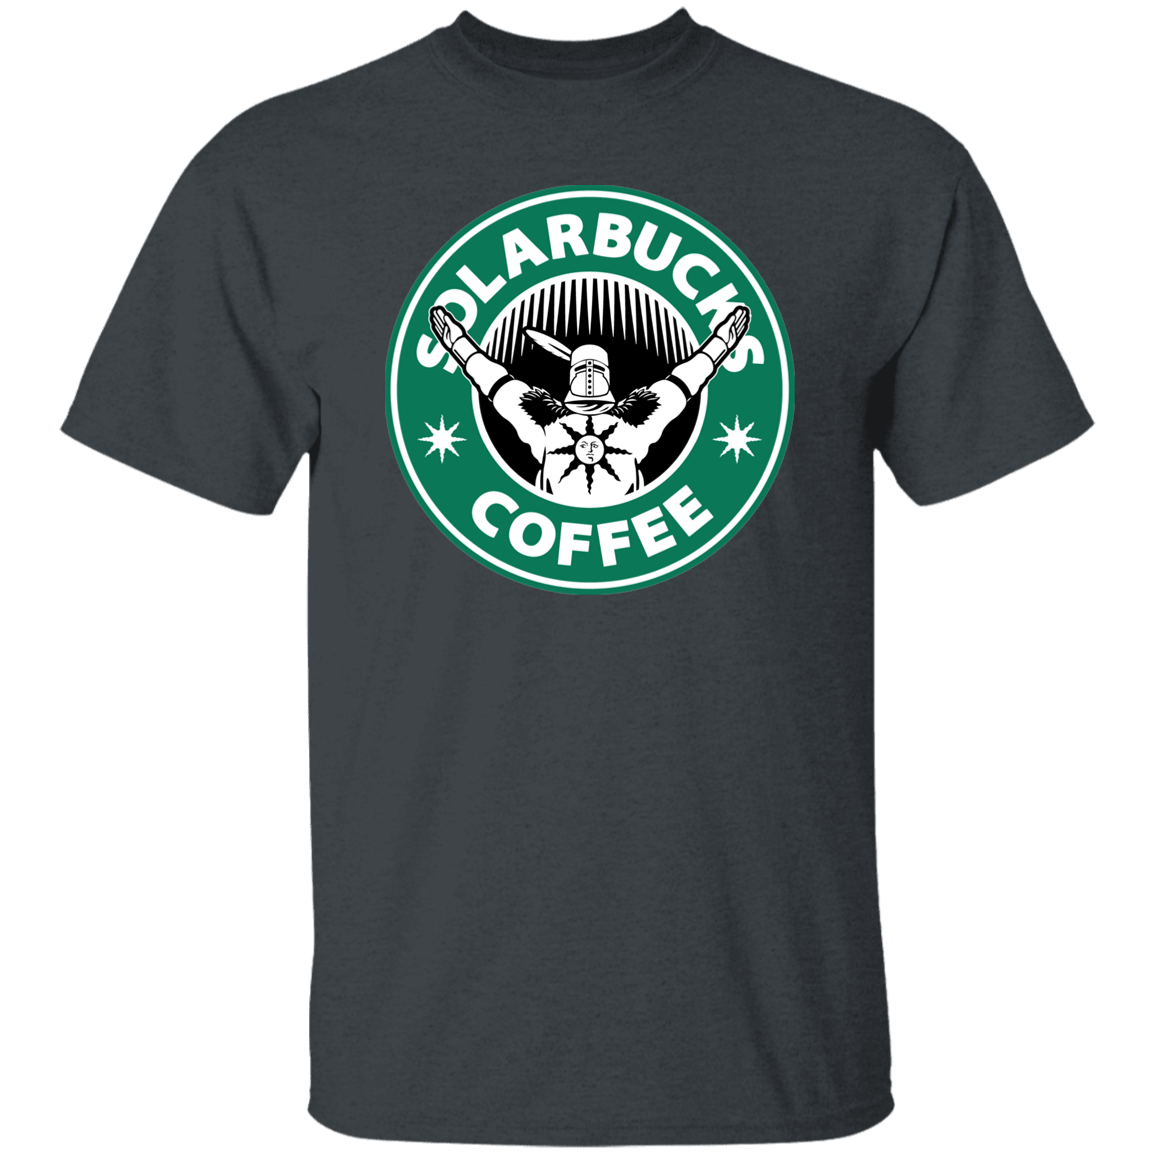 T-Shirts Dark Heather / S Solarbucks Coffee T-Shirt